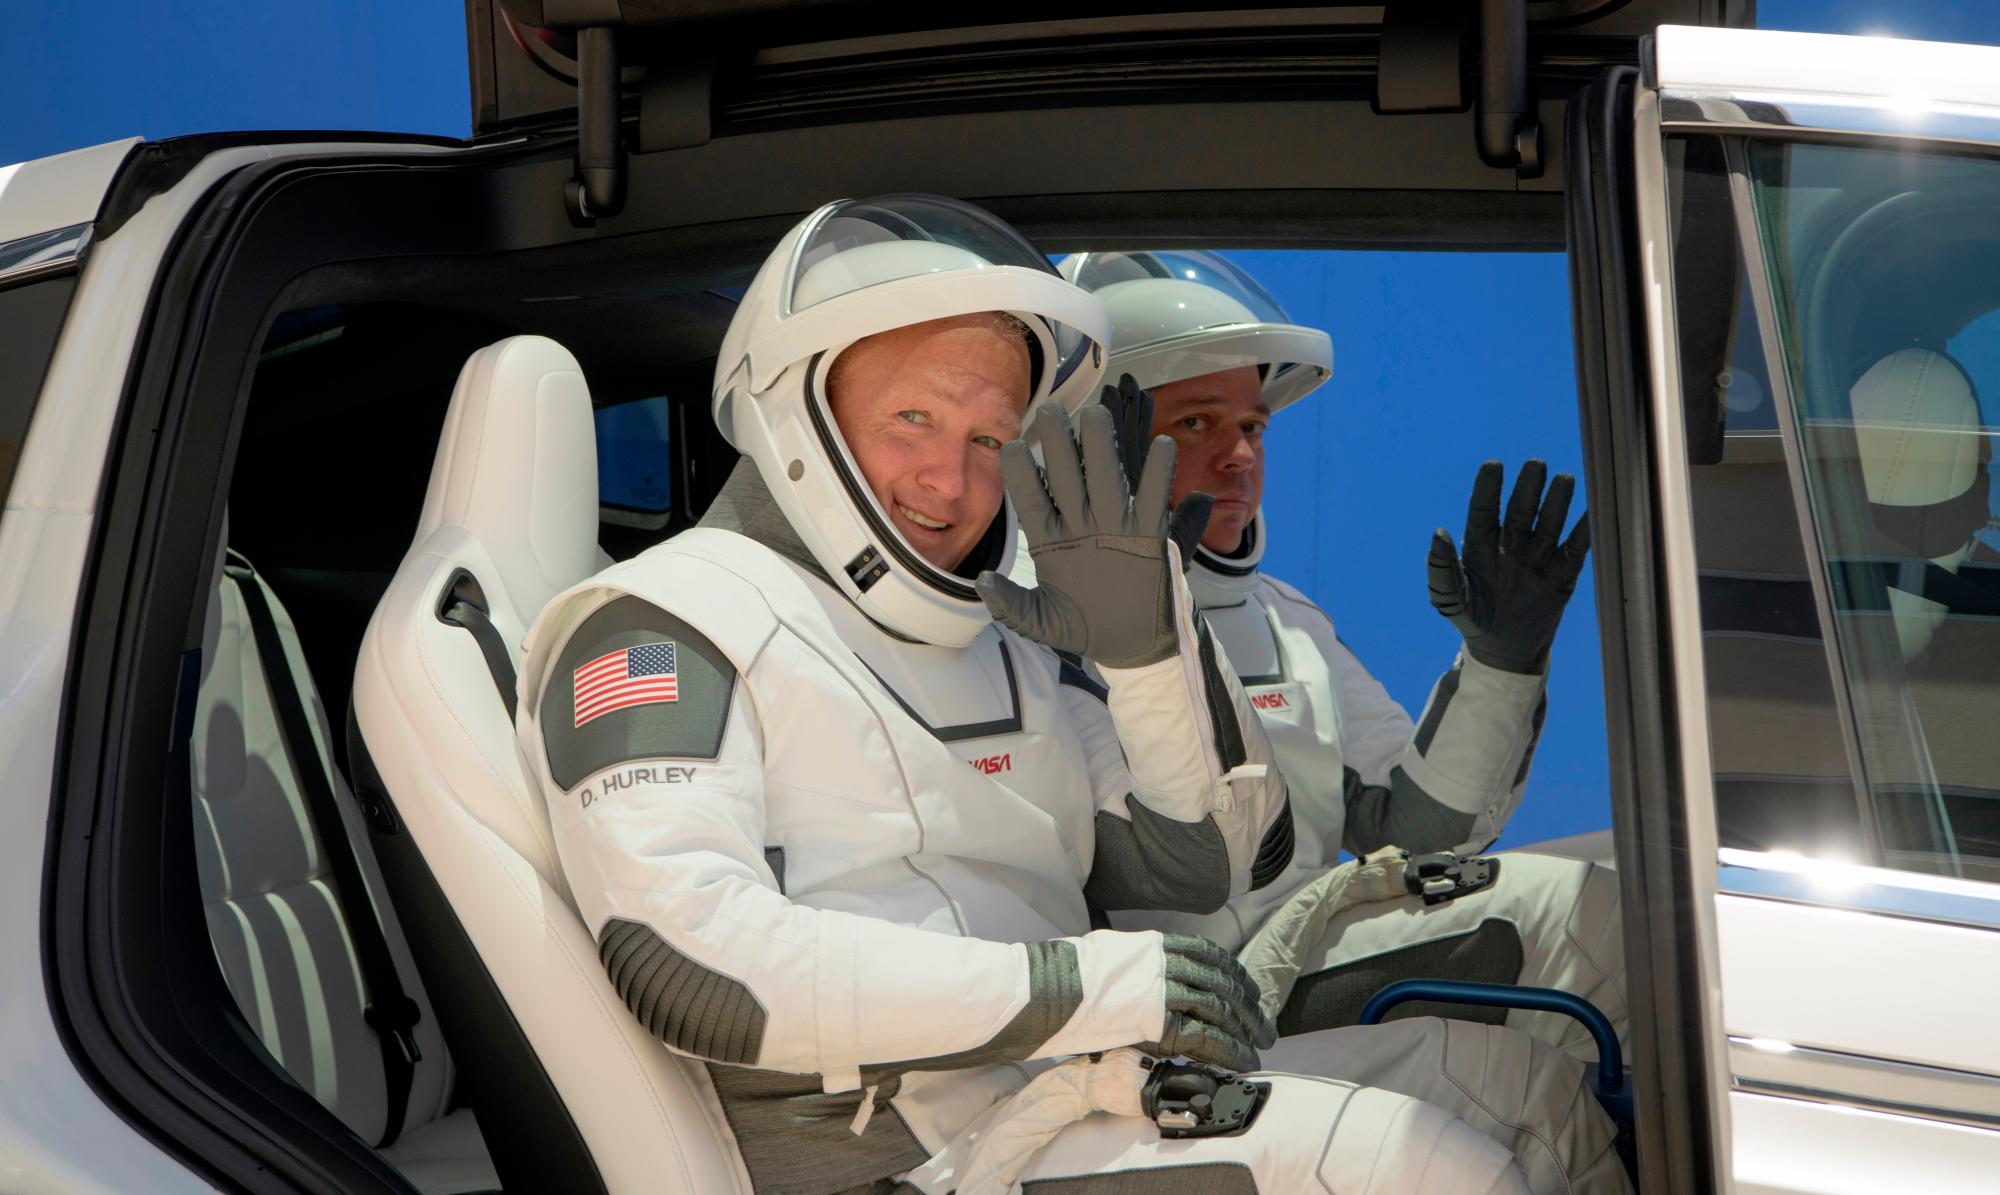 Una foto distribuida por la NASA muestra que los astronautas de la NASA Douglas Hurley, a la izquierda, y Robert Behnken, vestidos con trajes espaciales SpaceX, son vistos cuando salen de las operaciones y verificación de Neil A. Armstrong Edificio para el complejo de lanzamiento 39A durante un ensayo general antes del lanzamiento de la misión Demo-2, en el Centro Espacial Kennedy de la NASA en Florida, EE. UU., 23 de mayo de 2020. La misión SpaceX Demo-2 de la NASA es el primer lanzamiento con astronautas del La nave espacial SpaceX Crew Dragon y el cohete Falcon 9 a la Estación Espacial Internacional como parte del Programa de tripulación comercial de la agencia. El vuelo de prueba sirve como una demostración de extremo a extremo del sistema de transporte de la tripulación de SpaceX. Behnken y Hurley están programados para lanzarse a las 4:33 p.m. EDT el 27 de mayo, desde el complejo de lanzamiento 39A en el Centro Espacial Kennedy. La nueva era del vuelo espacial humano comenzará cuando los astronautas estadounidenses vuelvan a lanzar un cohete estadounidense desde el suelo estadounidense a la órbita terrestre baja por primera vez desde la conclusión del Programa del Transbordador Espacial en 2011. (Estados Unidos) EFE / EPA / NASA / Bill Ingalls 